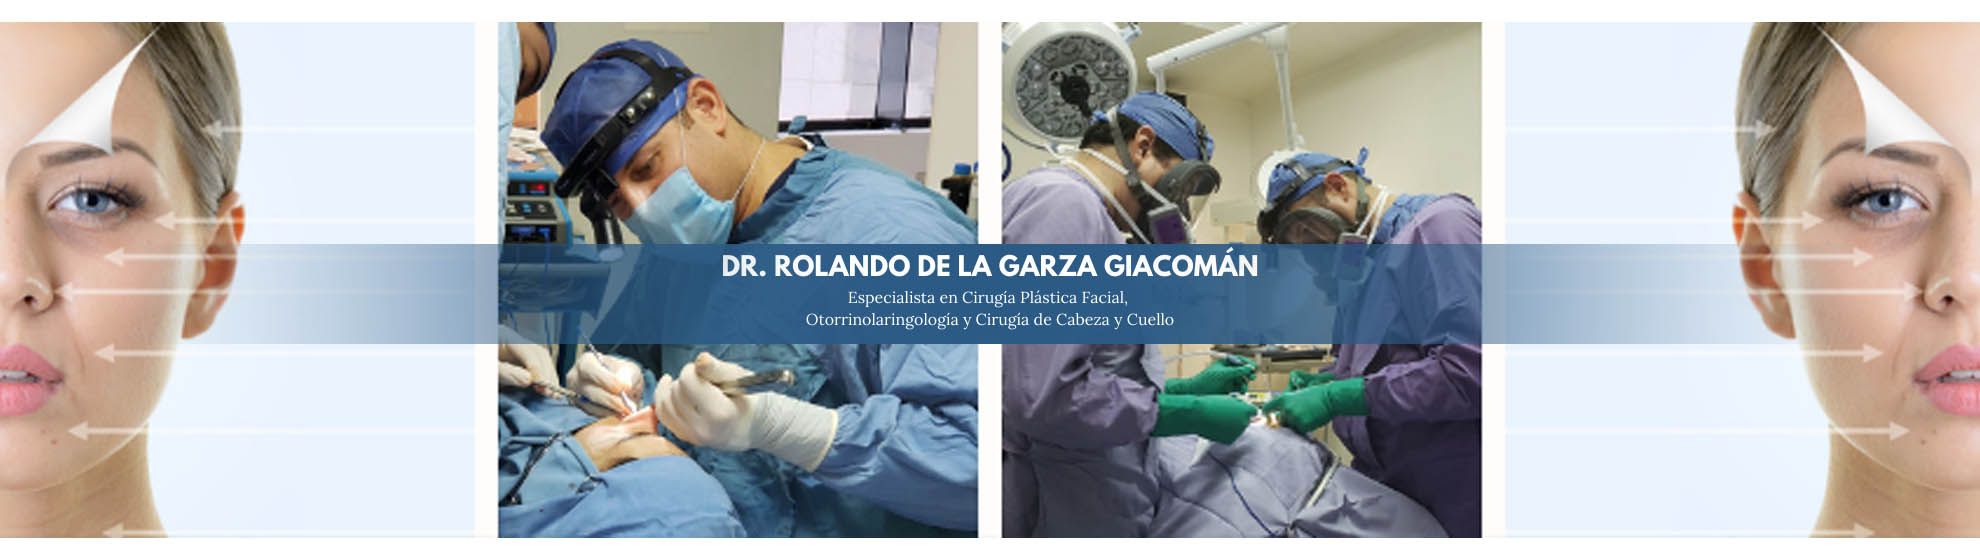 Fasent. Dr Rolando de la Garza Giacomán